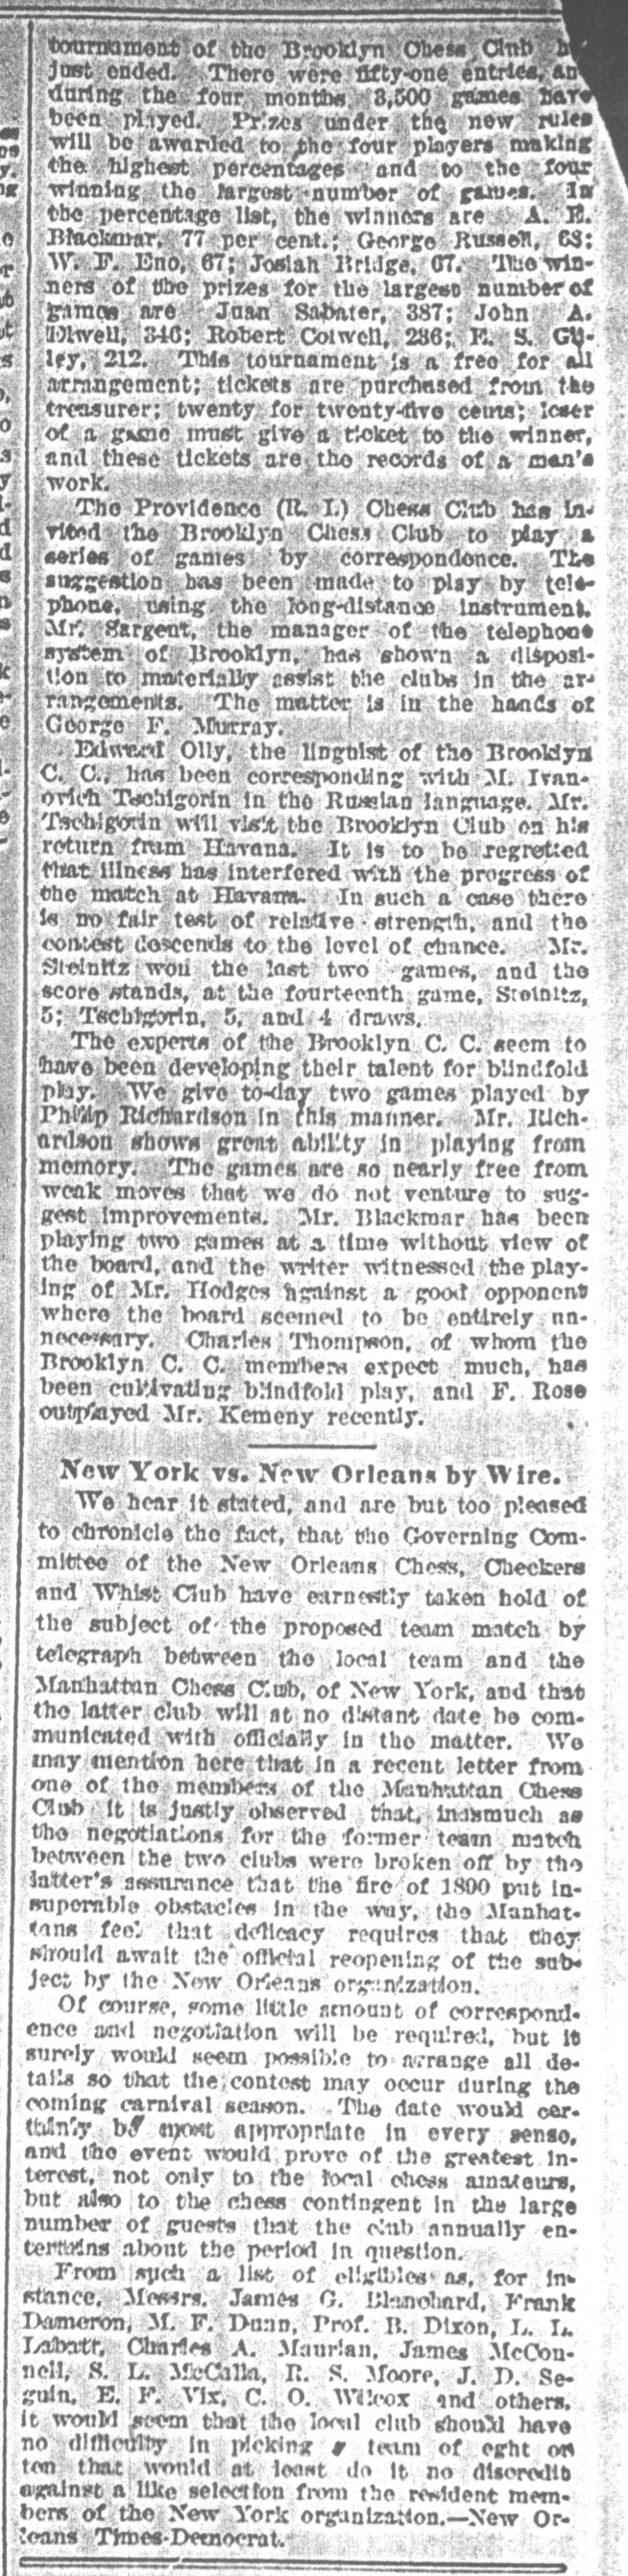 1892.02.06-03 Brooklyn Daily Standard-Union.jpg